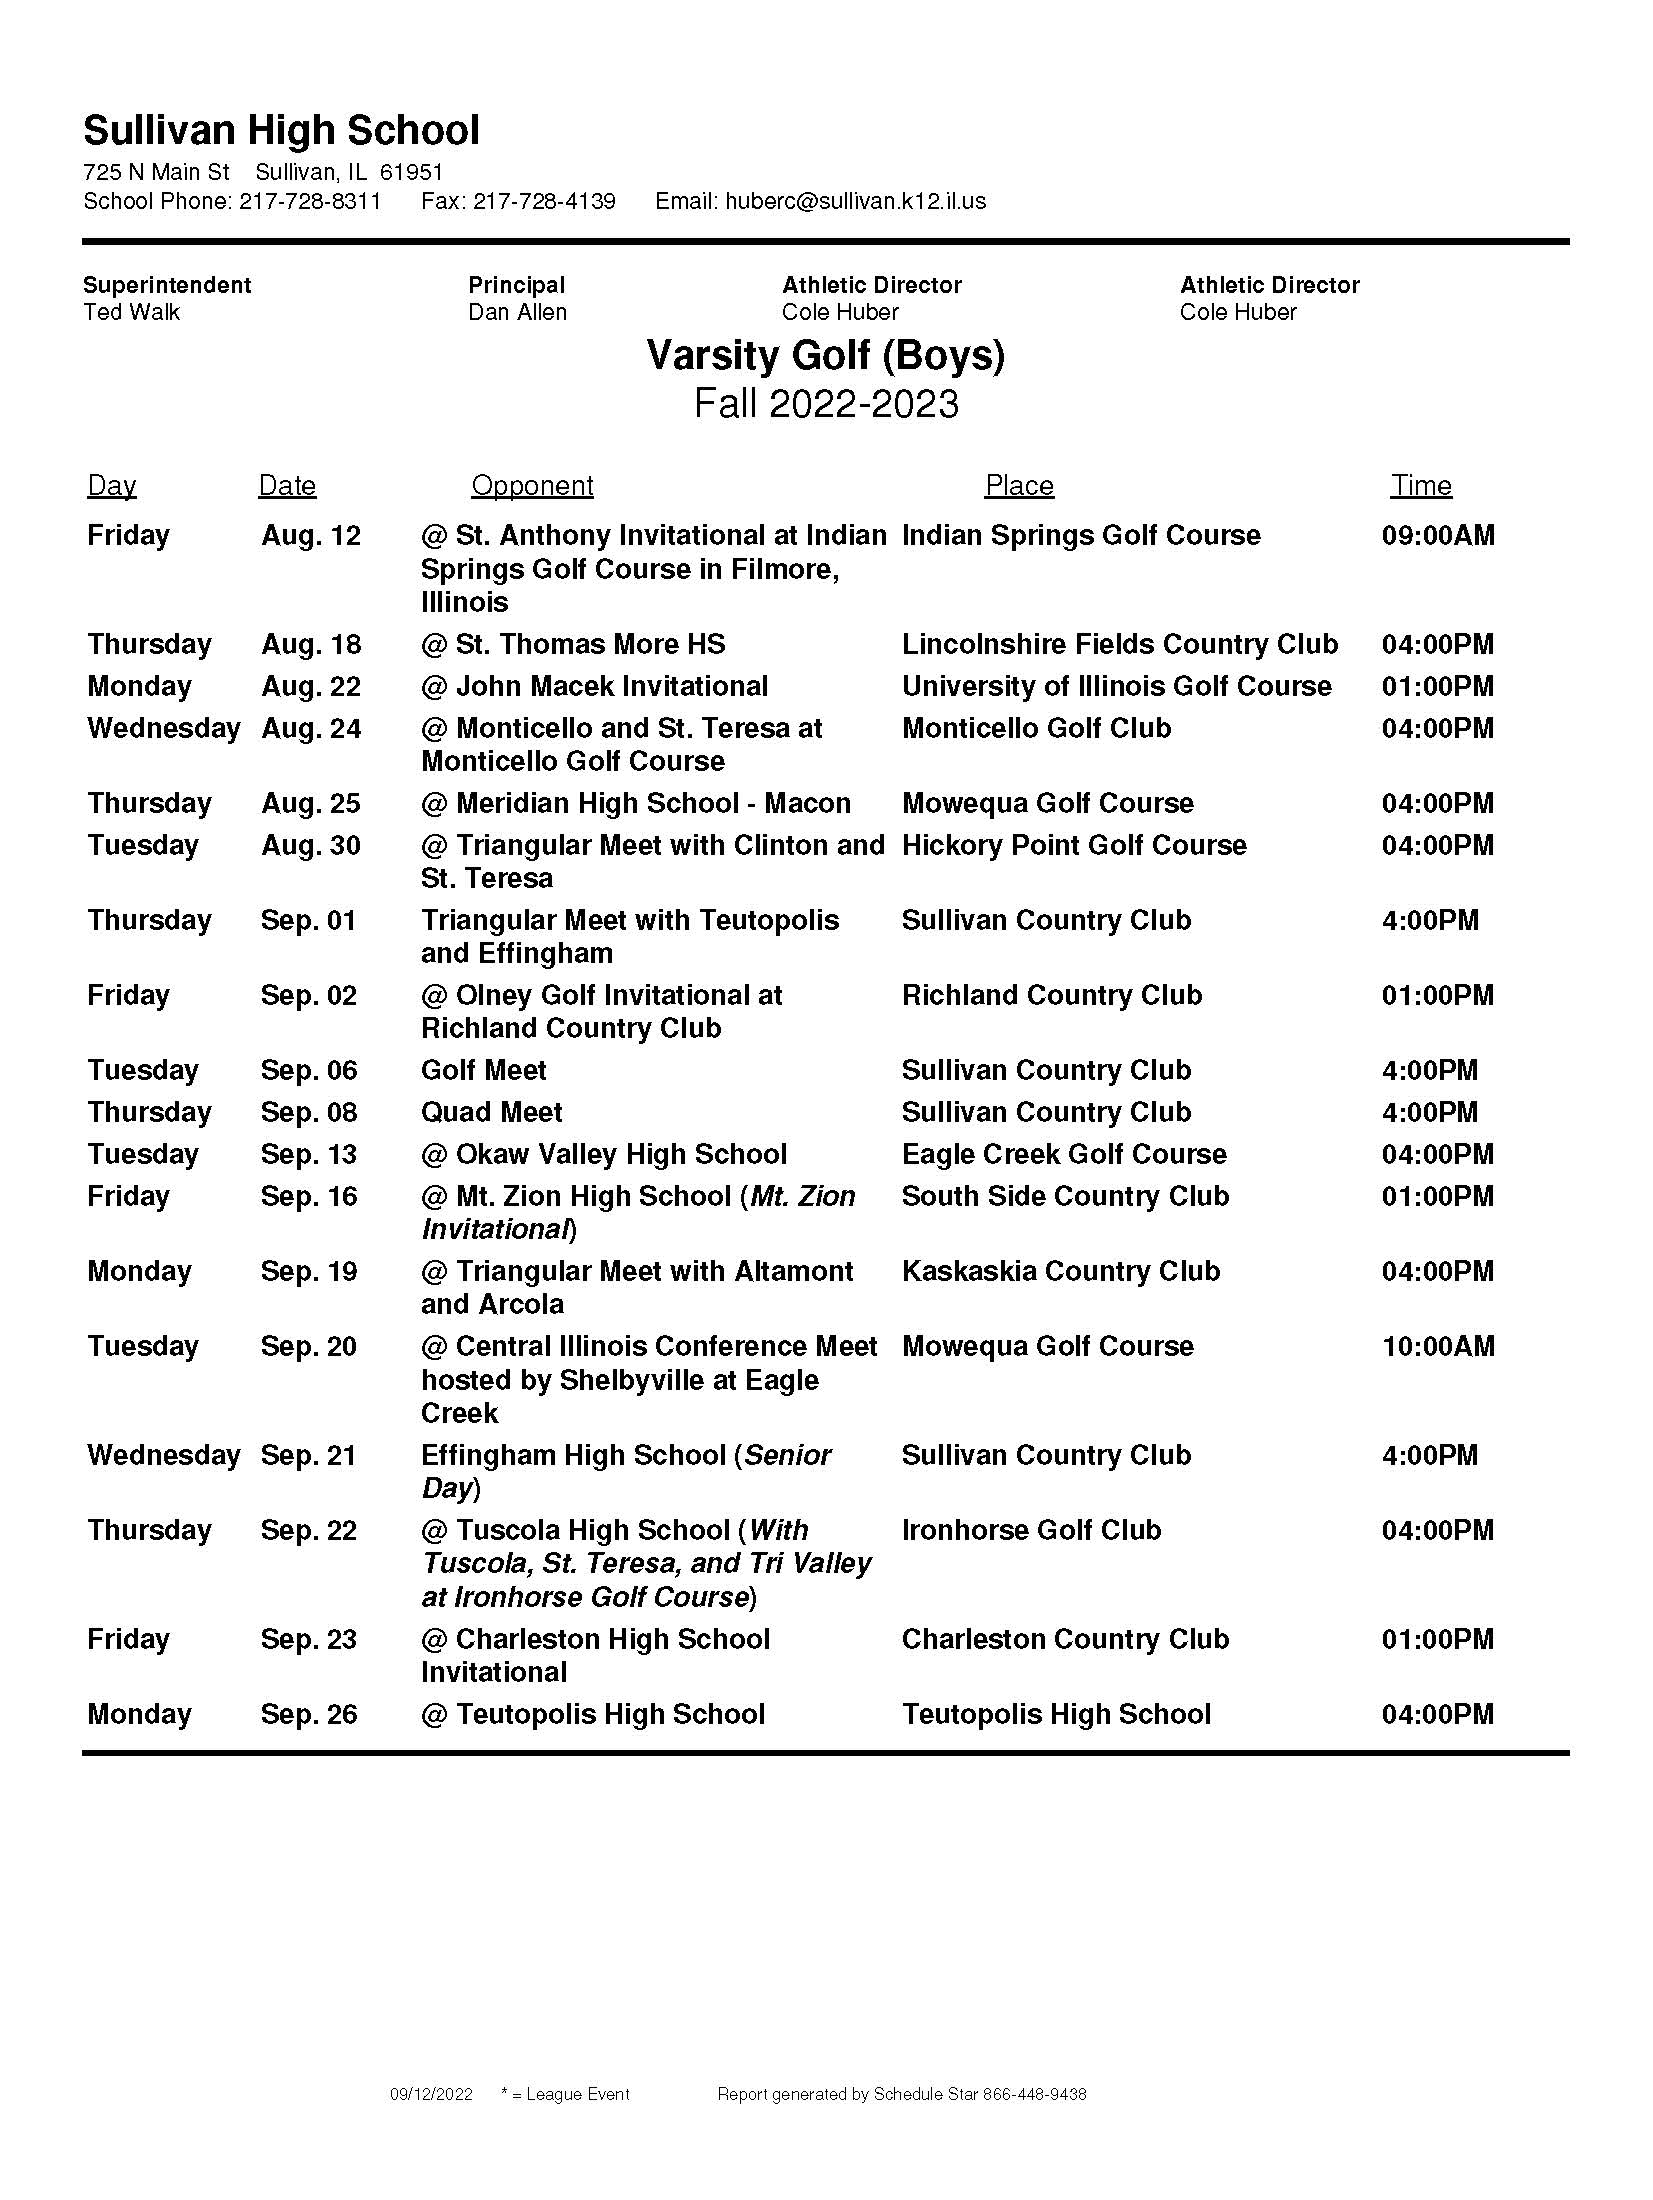 SHS Golf Schedule Boys